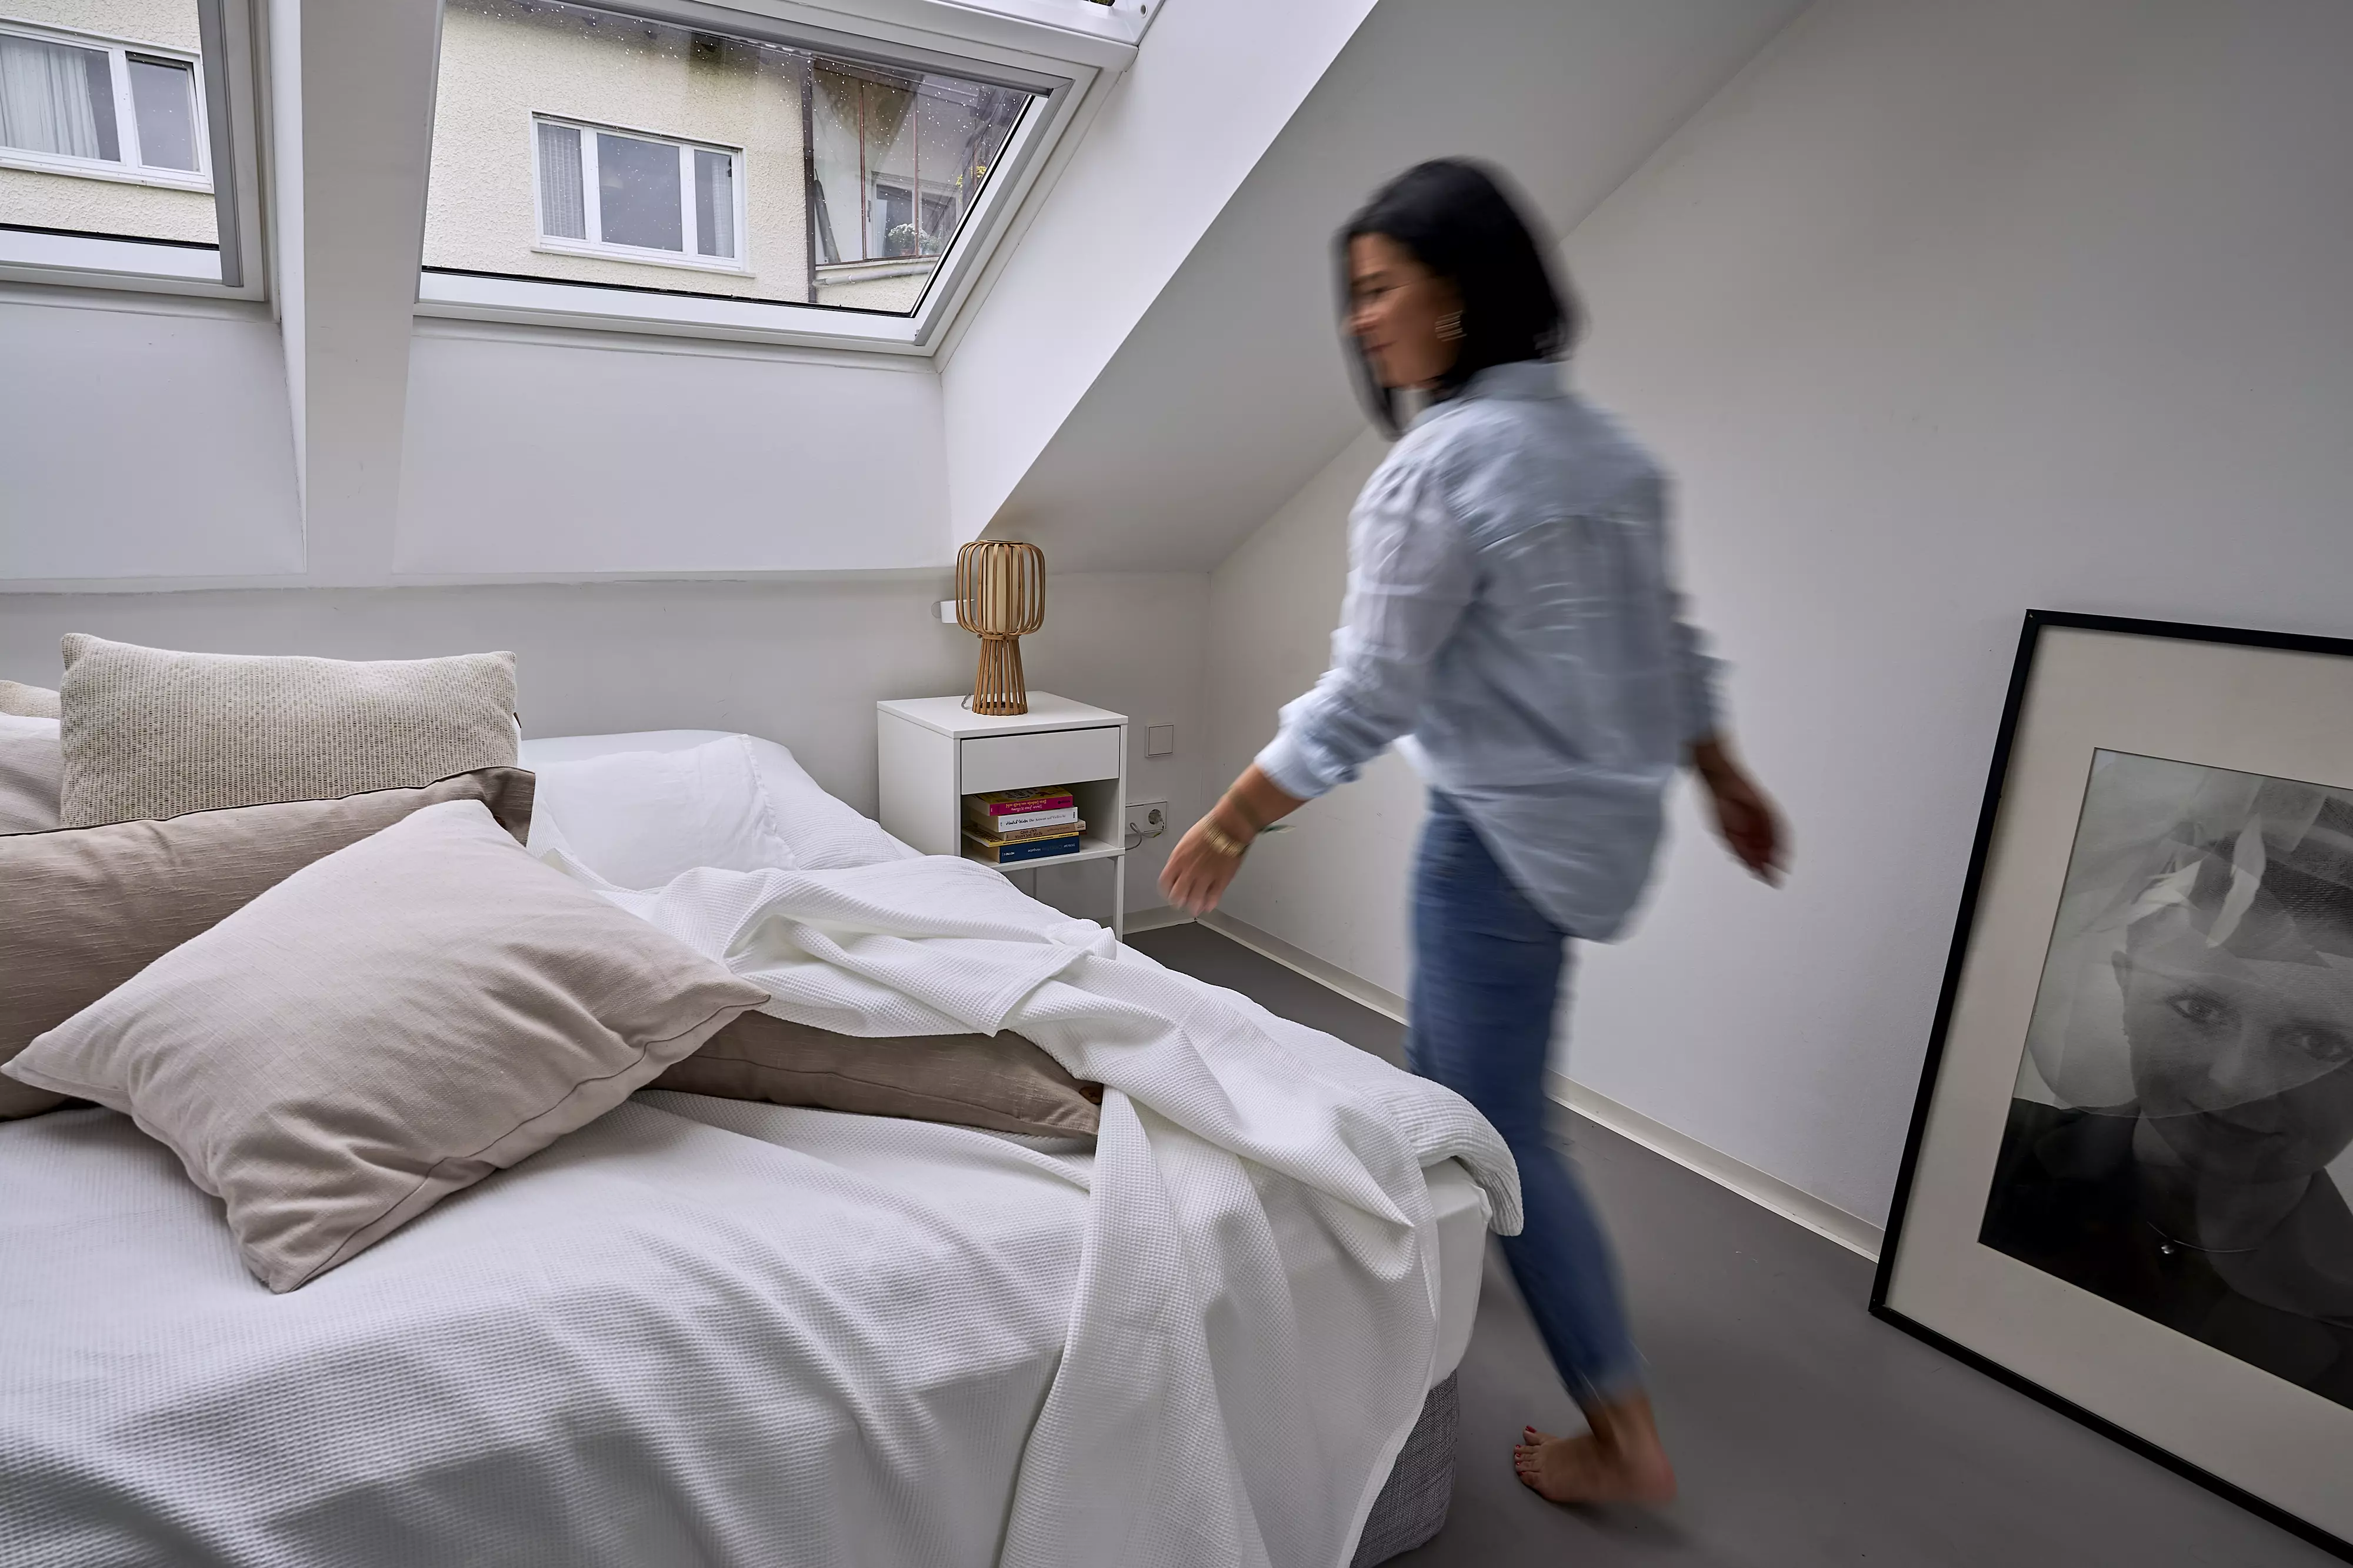 Gemütliches Dachboden-Schlafzimmer mit natürlichem Licht von einem VELUX Dachflächenfenster, kuscheliger Bettwäsche und moderner Einrichtung.